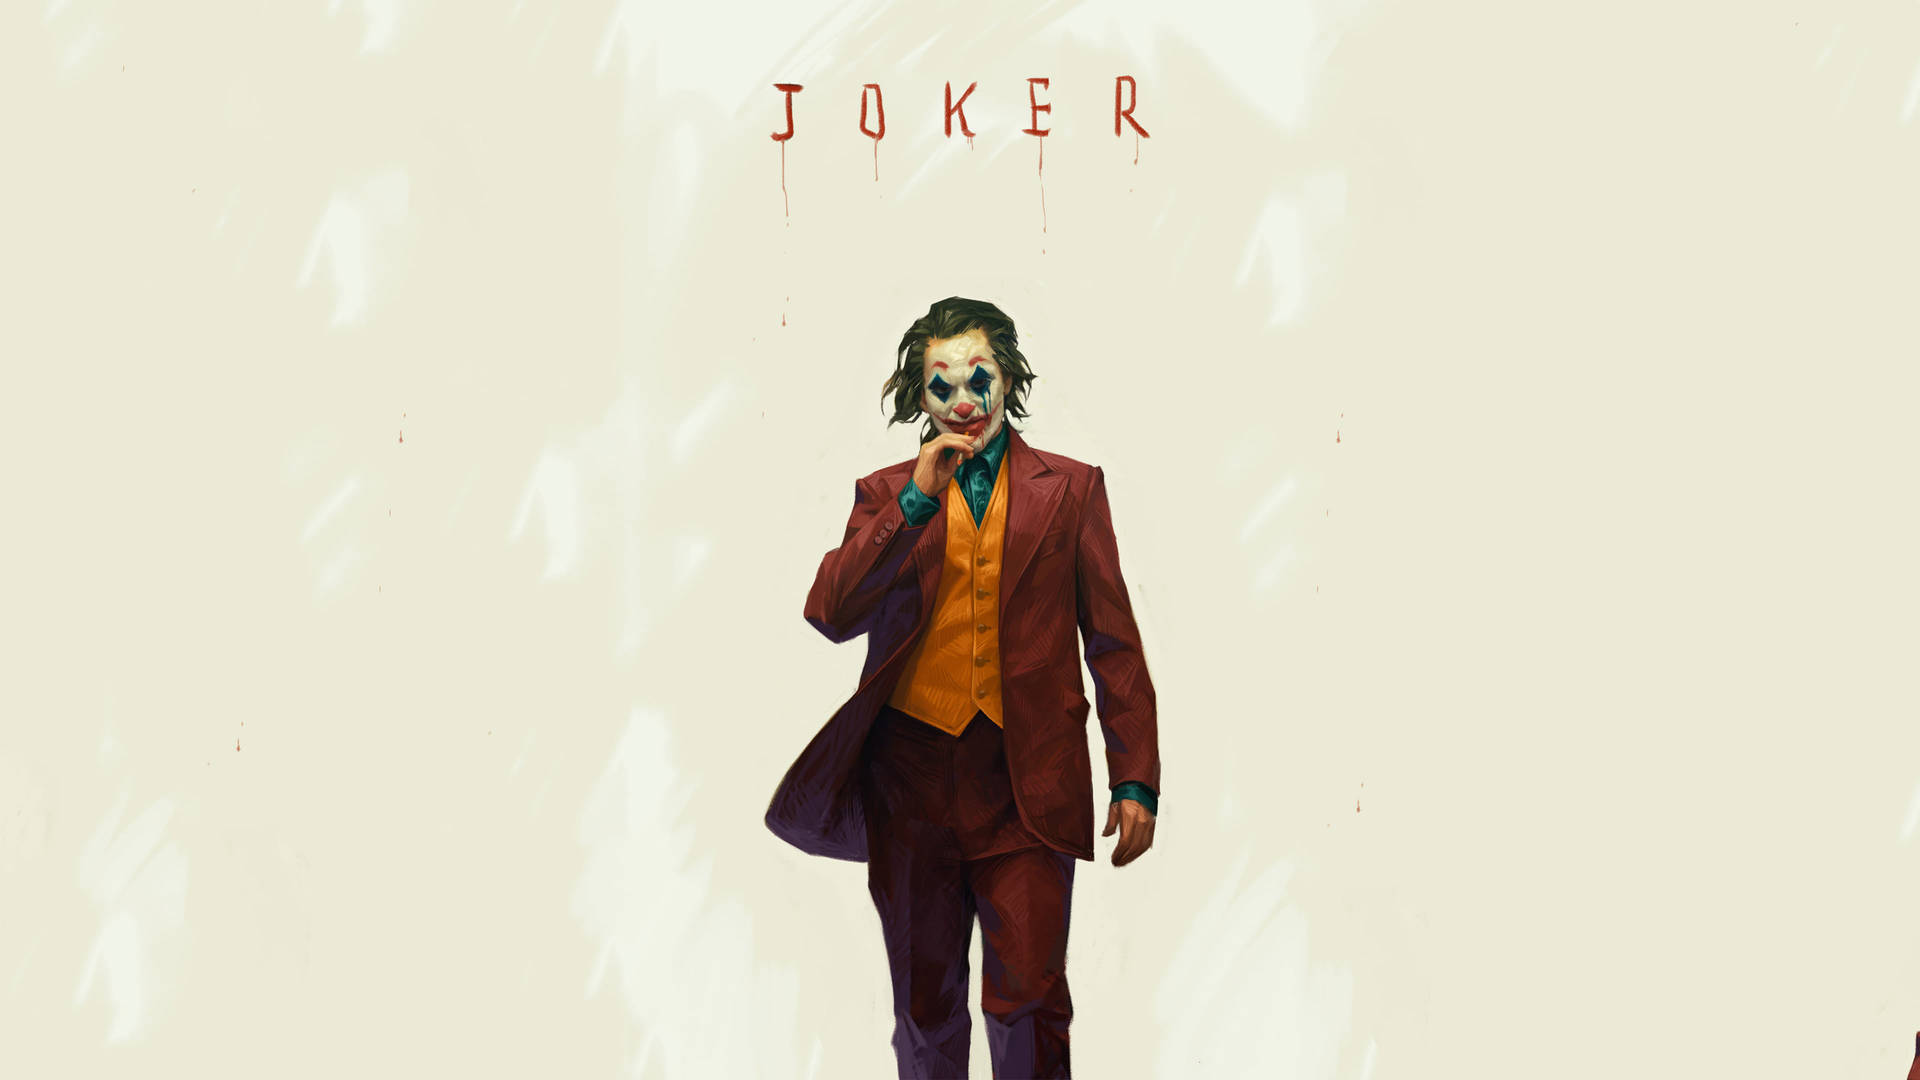 Joker 2019 Poster Art